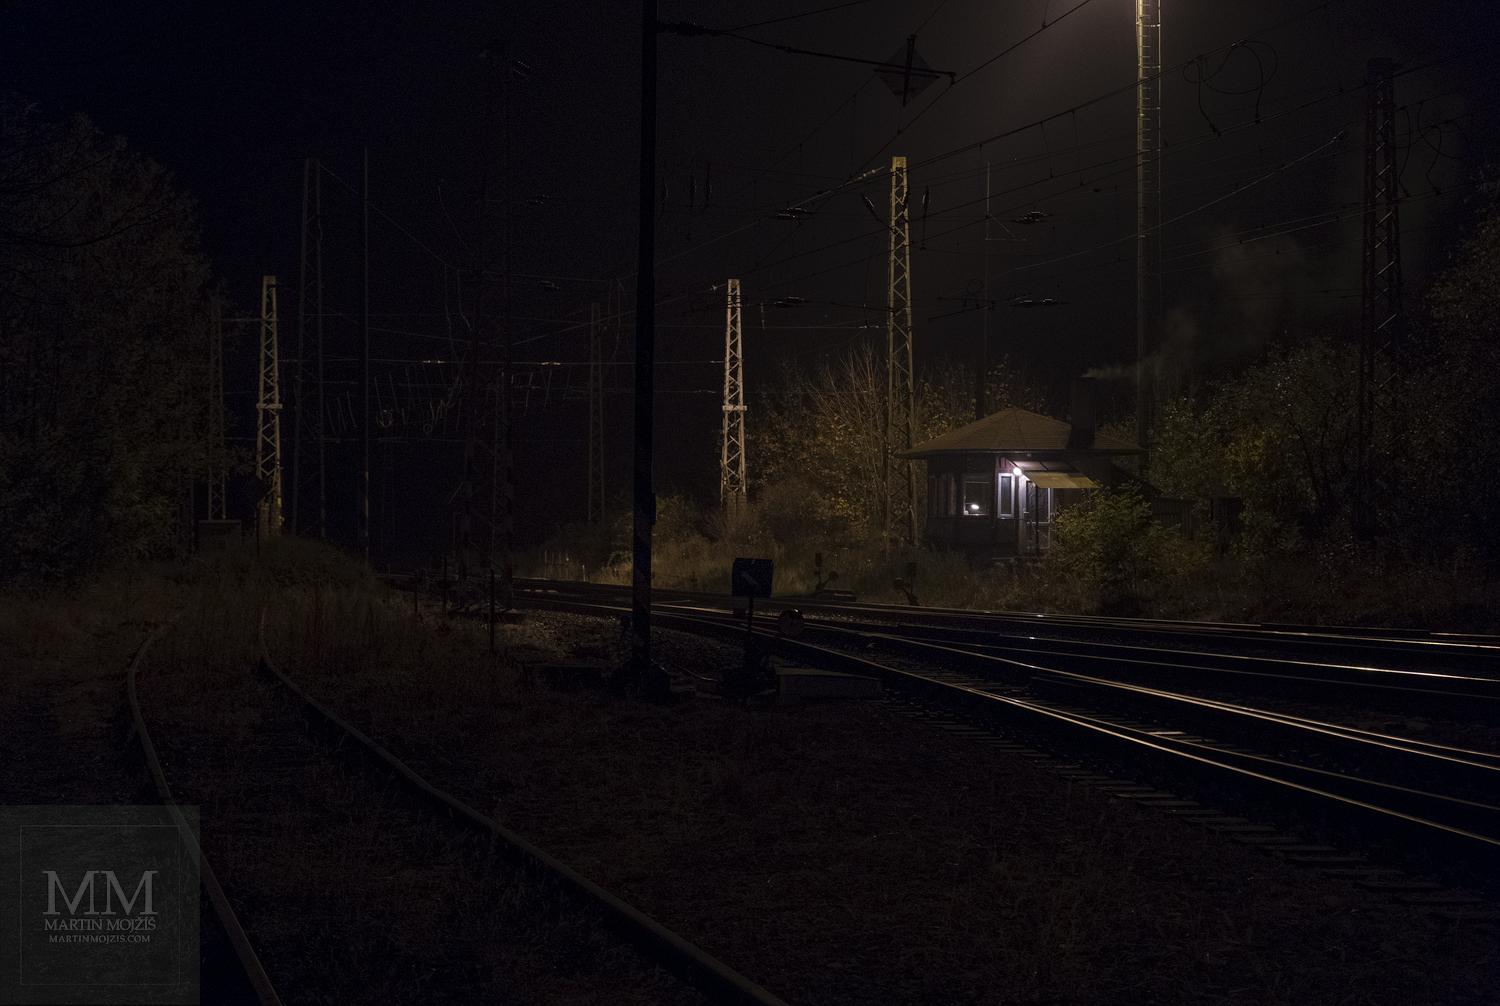 Velkoformátová umělecká fotografie strážního domku u trati v noci. Martin Mojžíš.